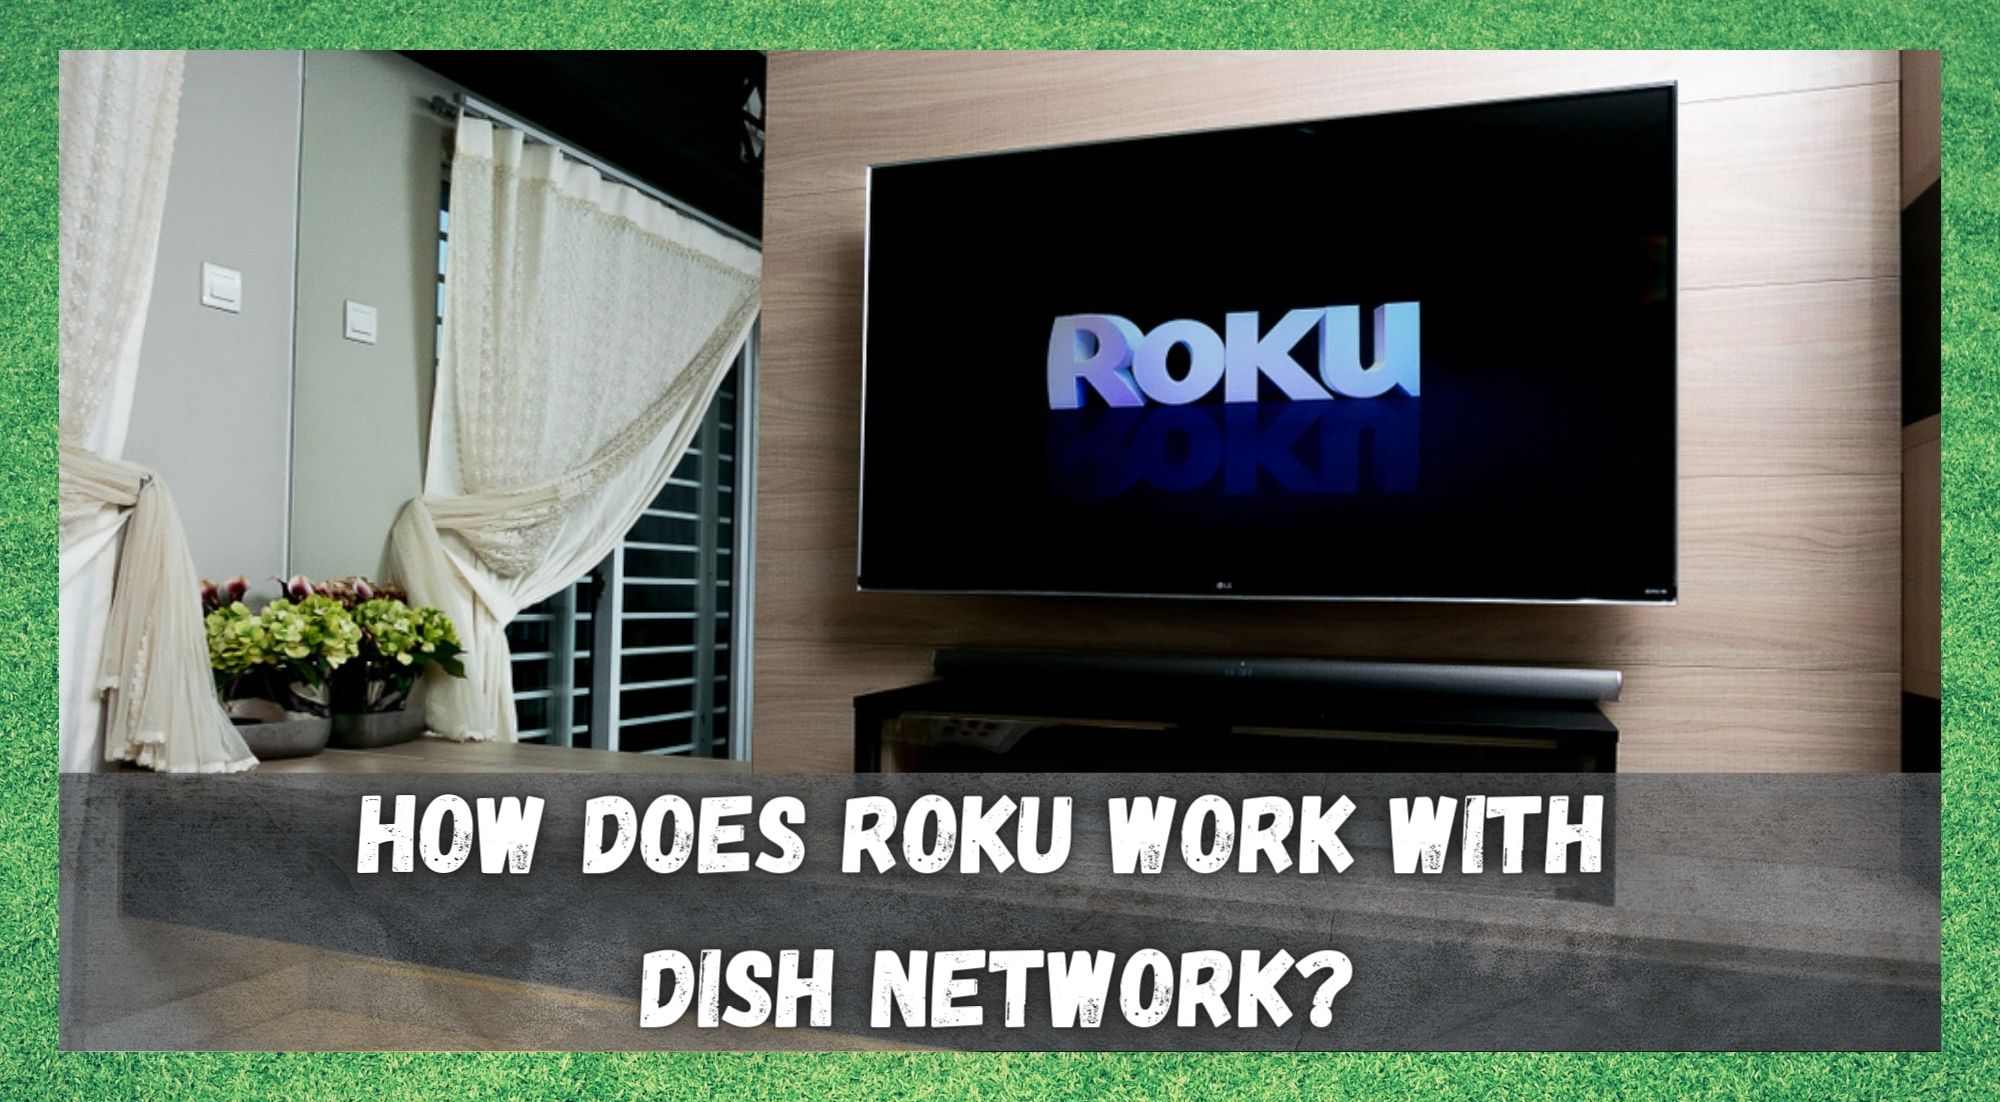 Roku Dish Network ilə necə işləyir?